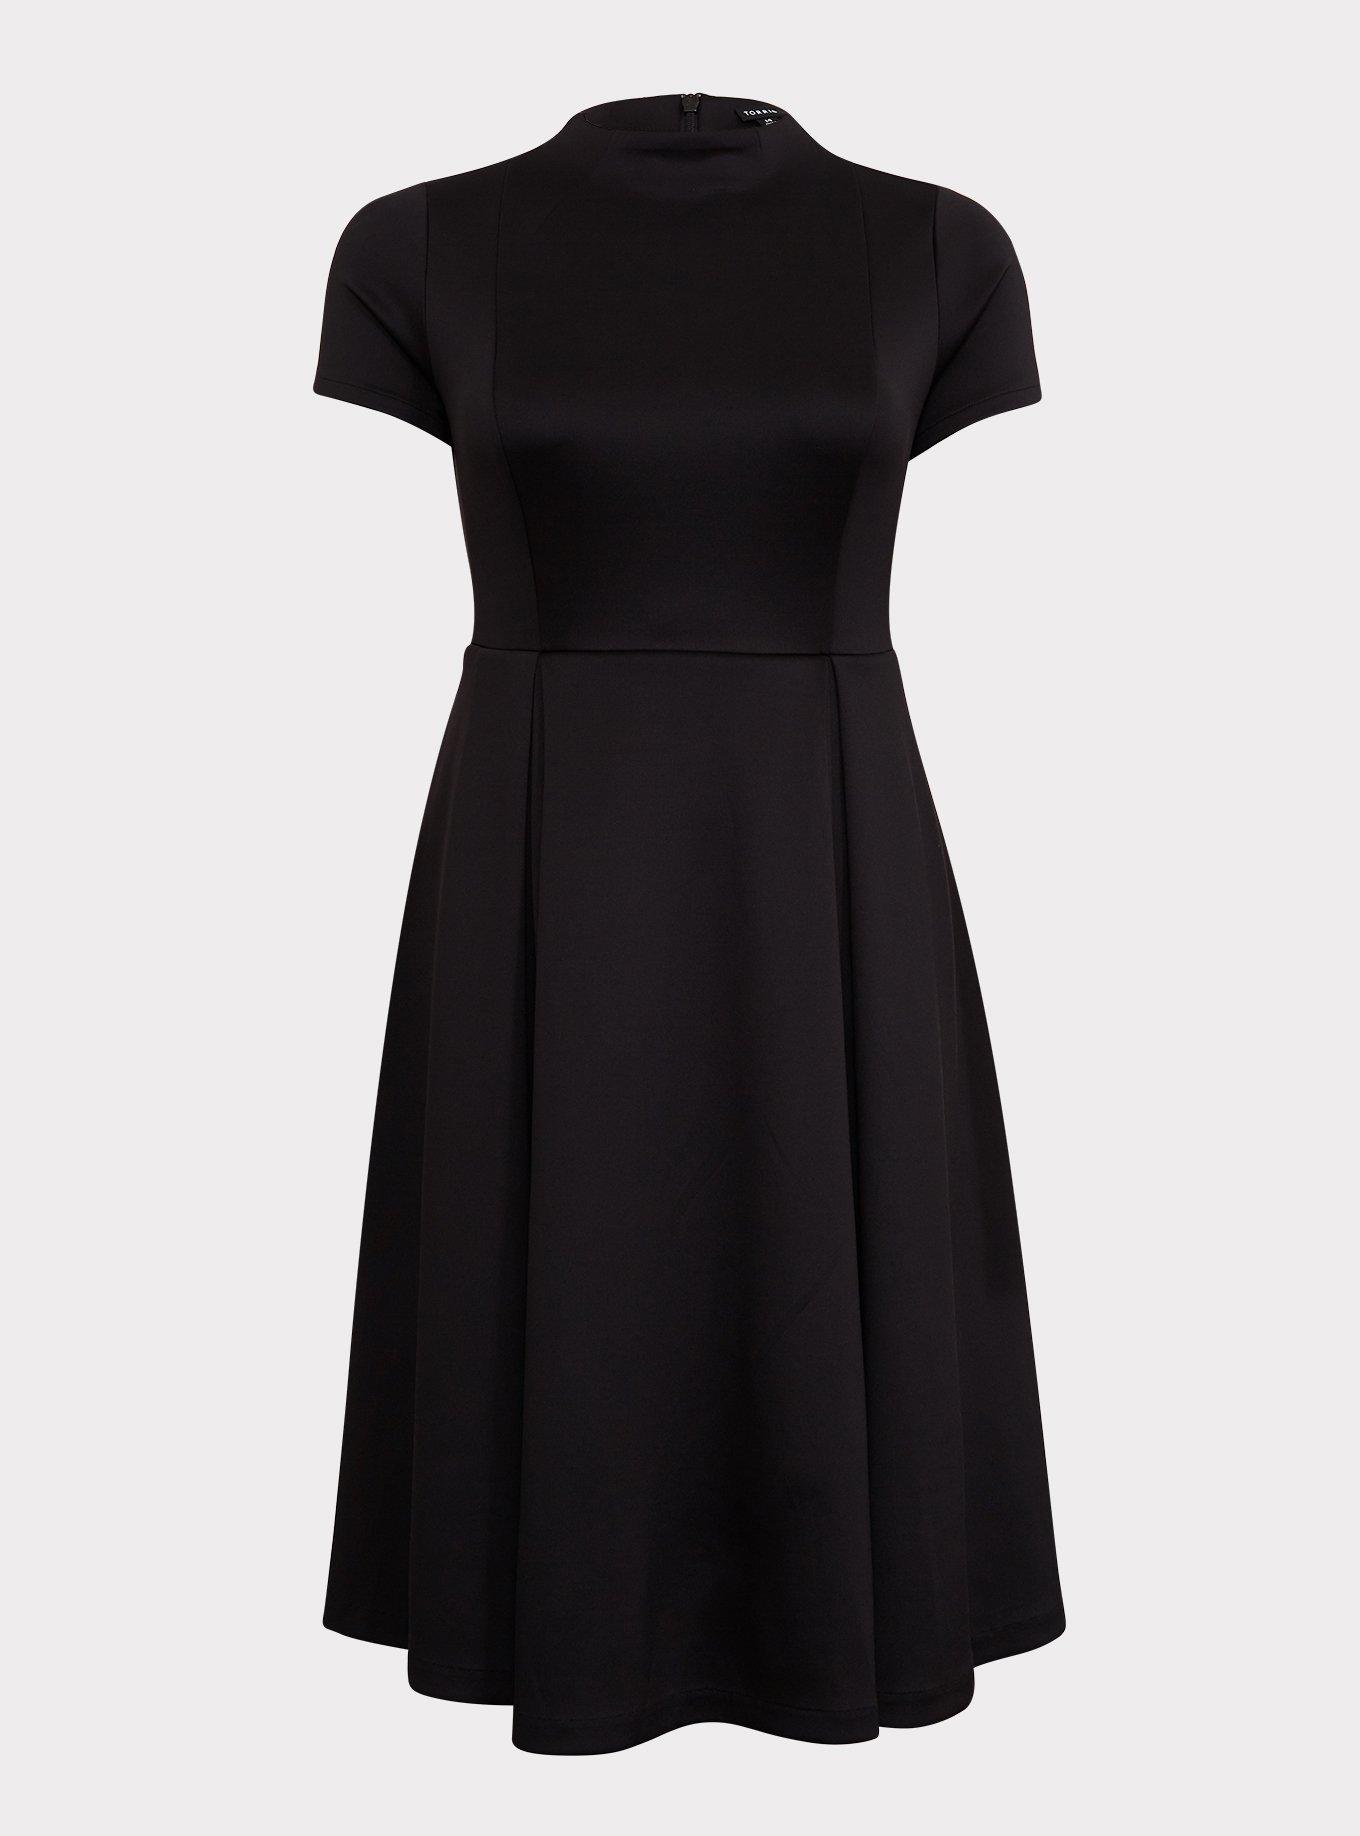 Plus Size - Black Scuba Knit Mock Neck Midi Dress - Torrid